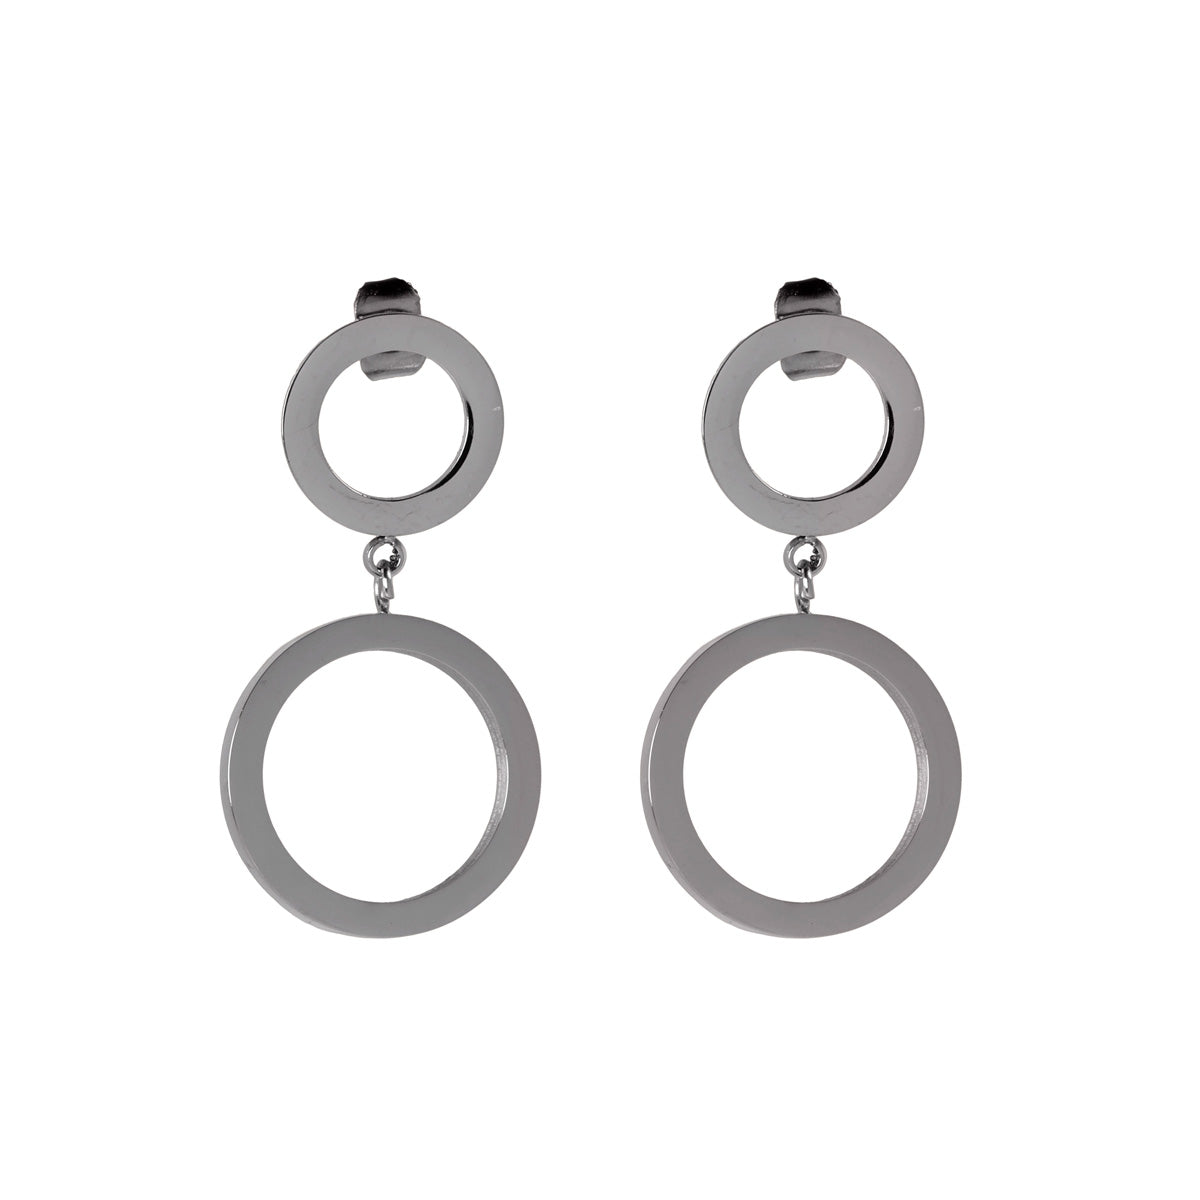 Dangling rings earring (steel 316L)